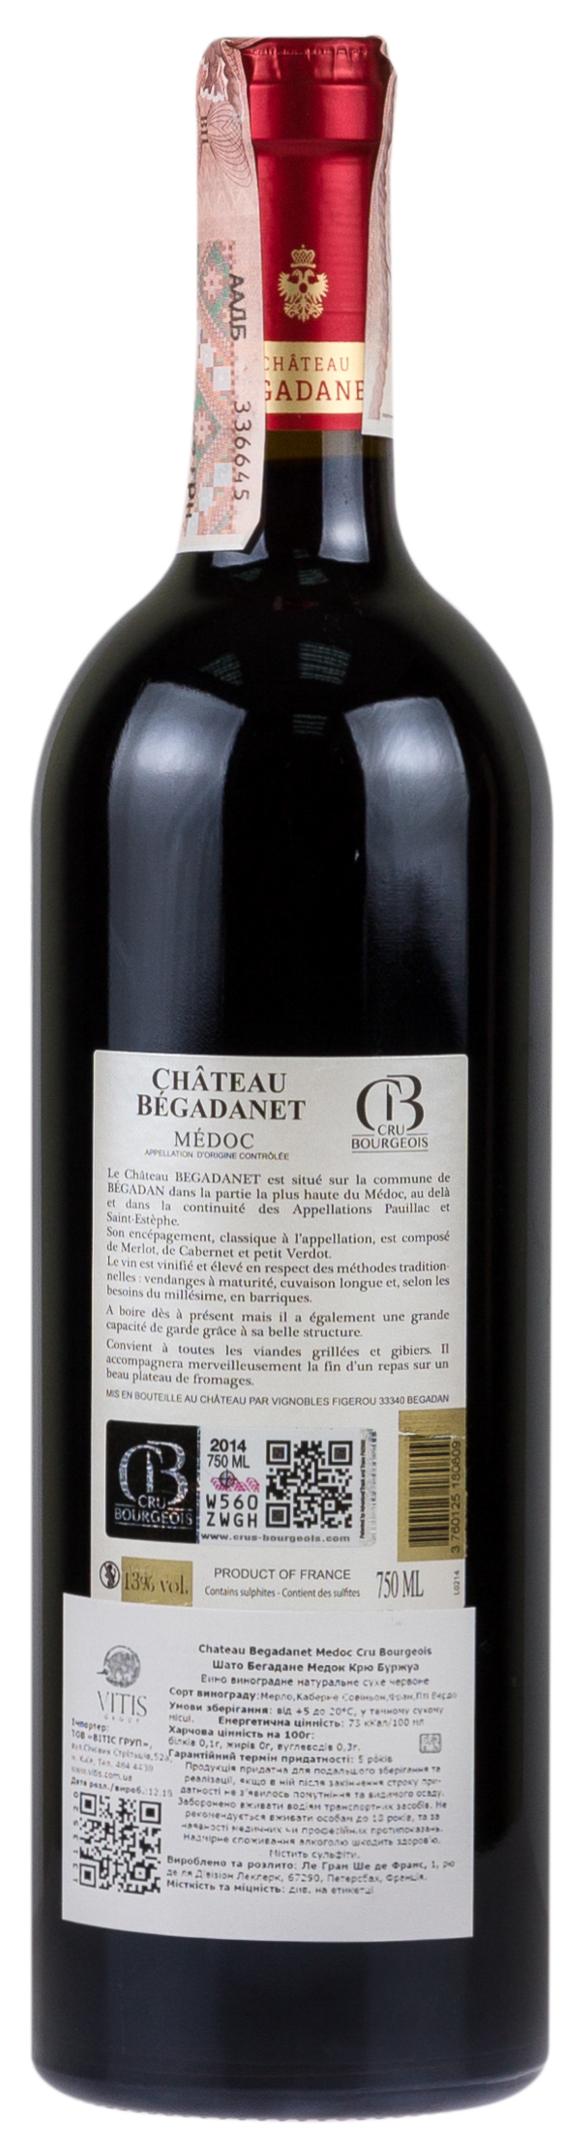 Chateau Begadanet Medoc 2014 Set 6 Bottles - 2